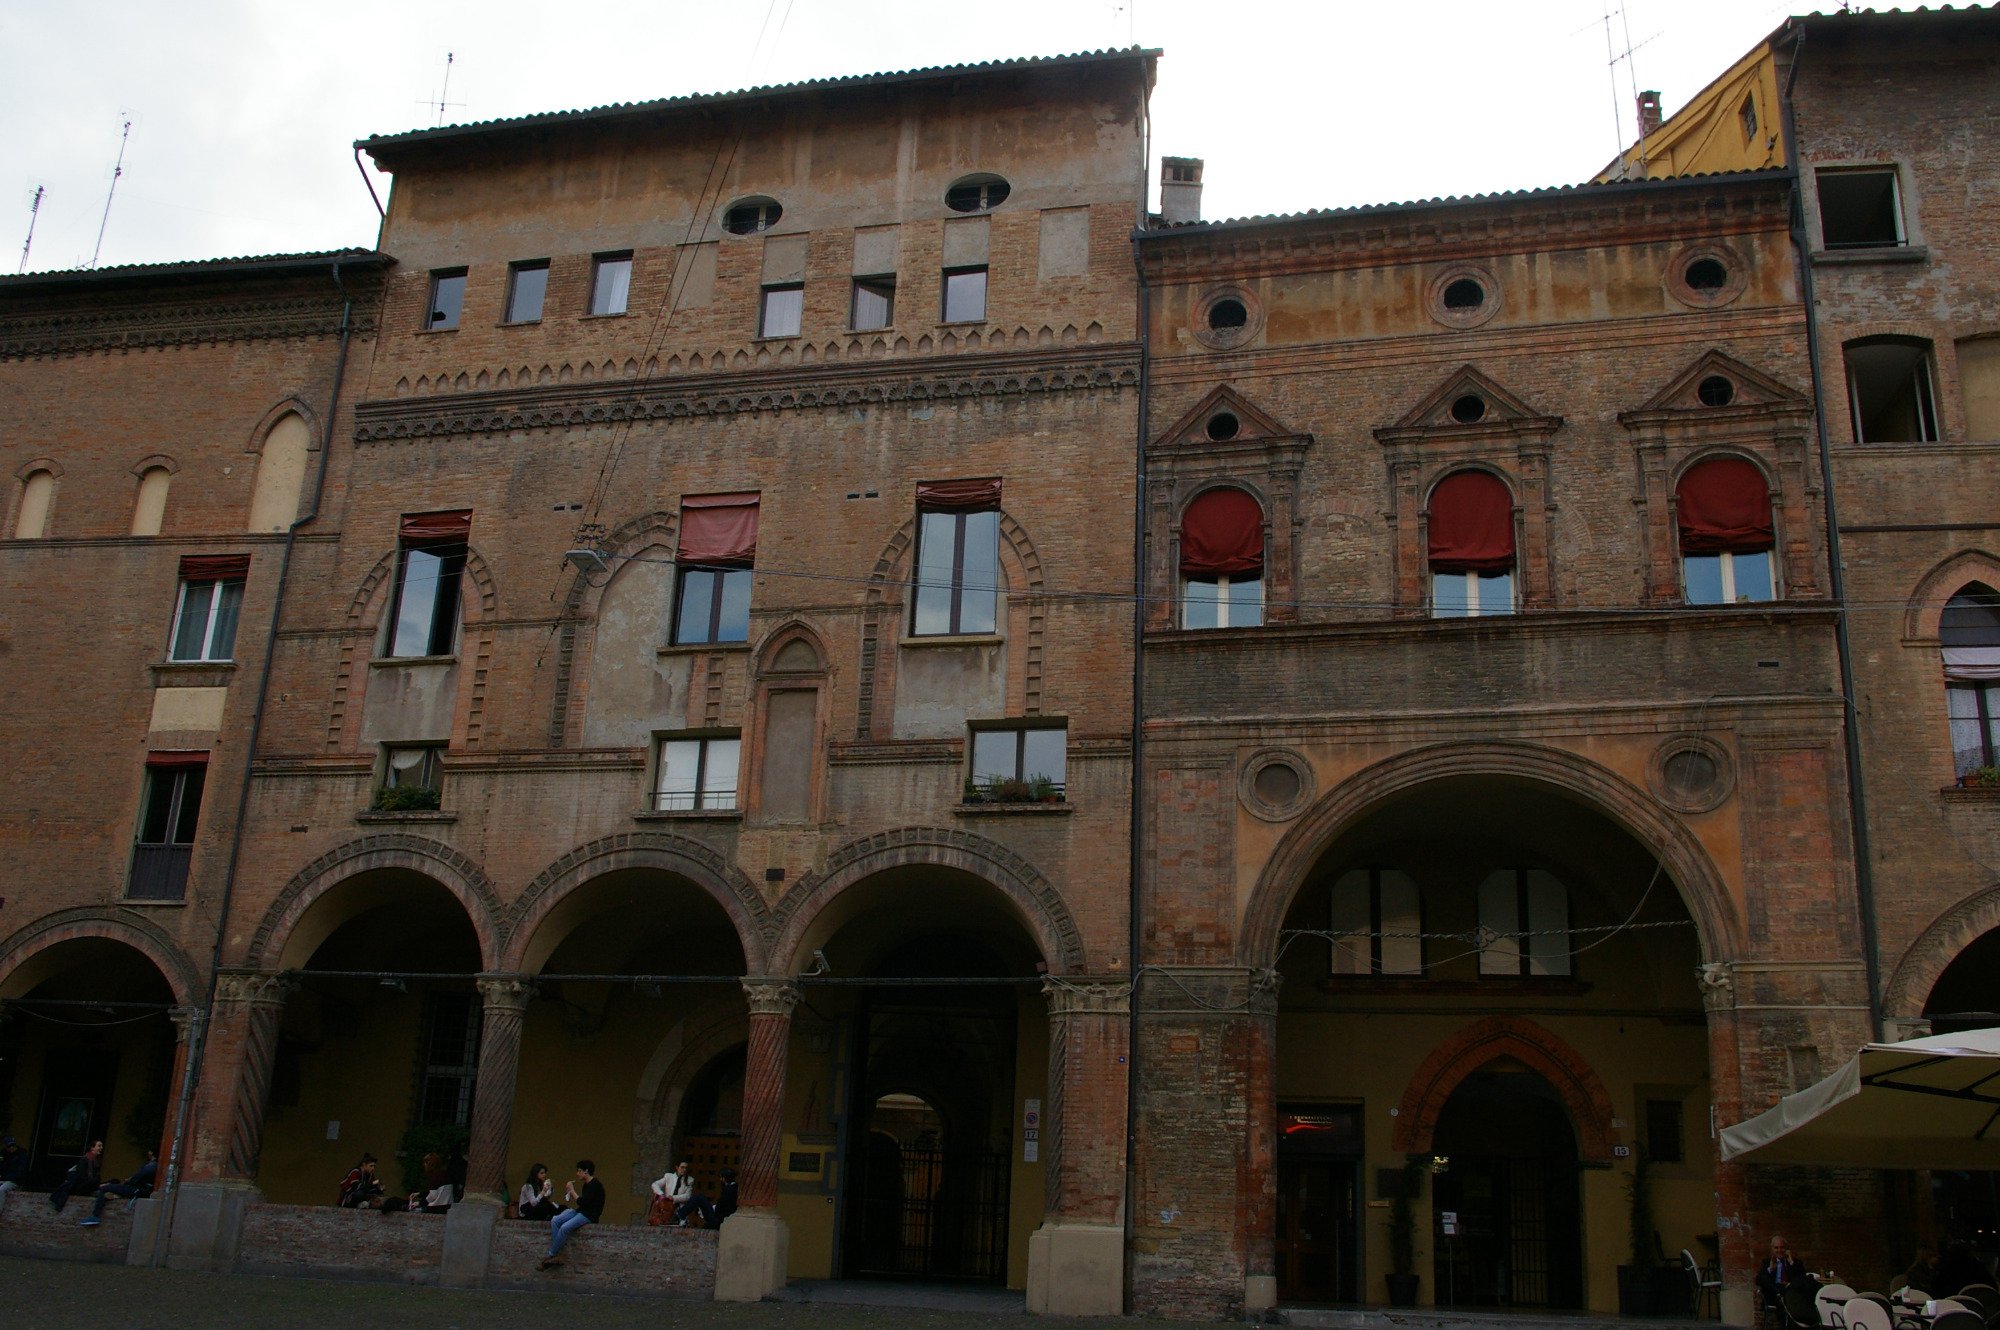 Piazza Santo Stefano